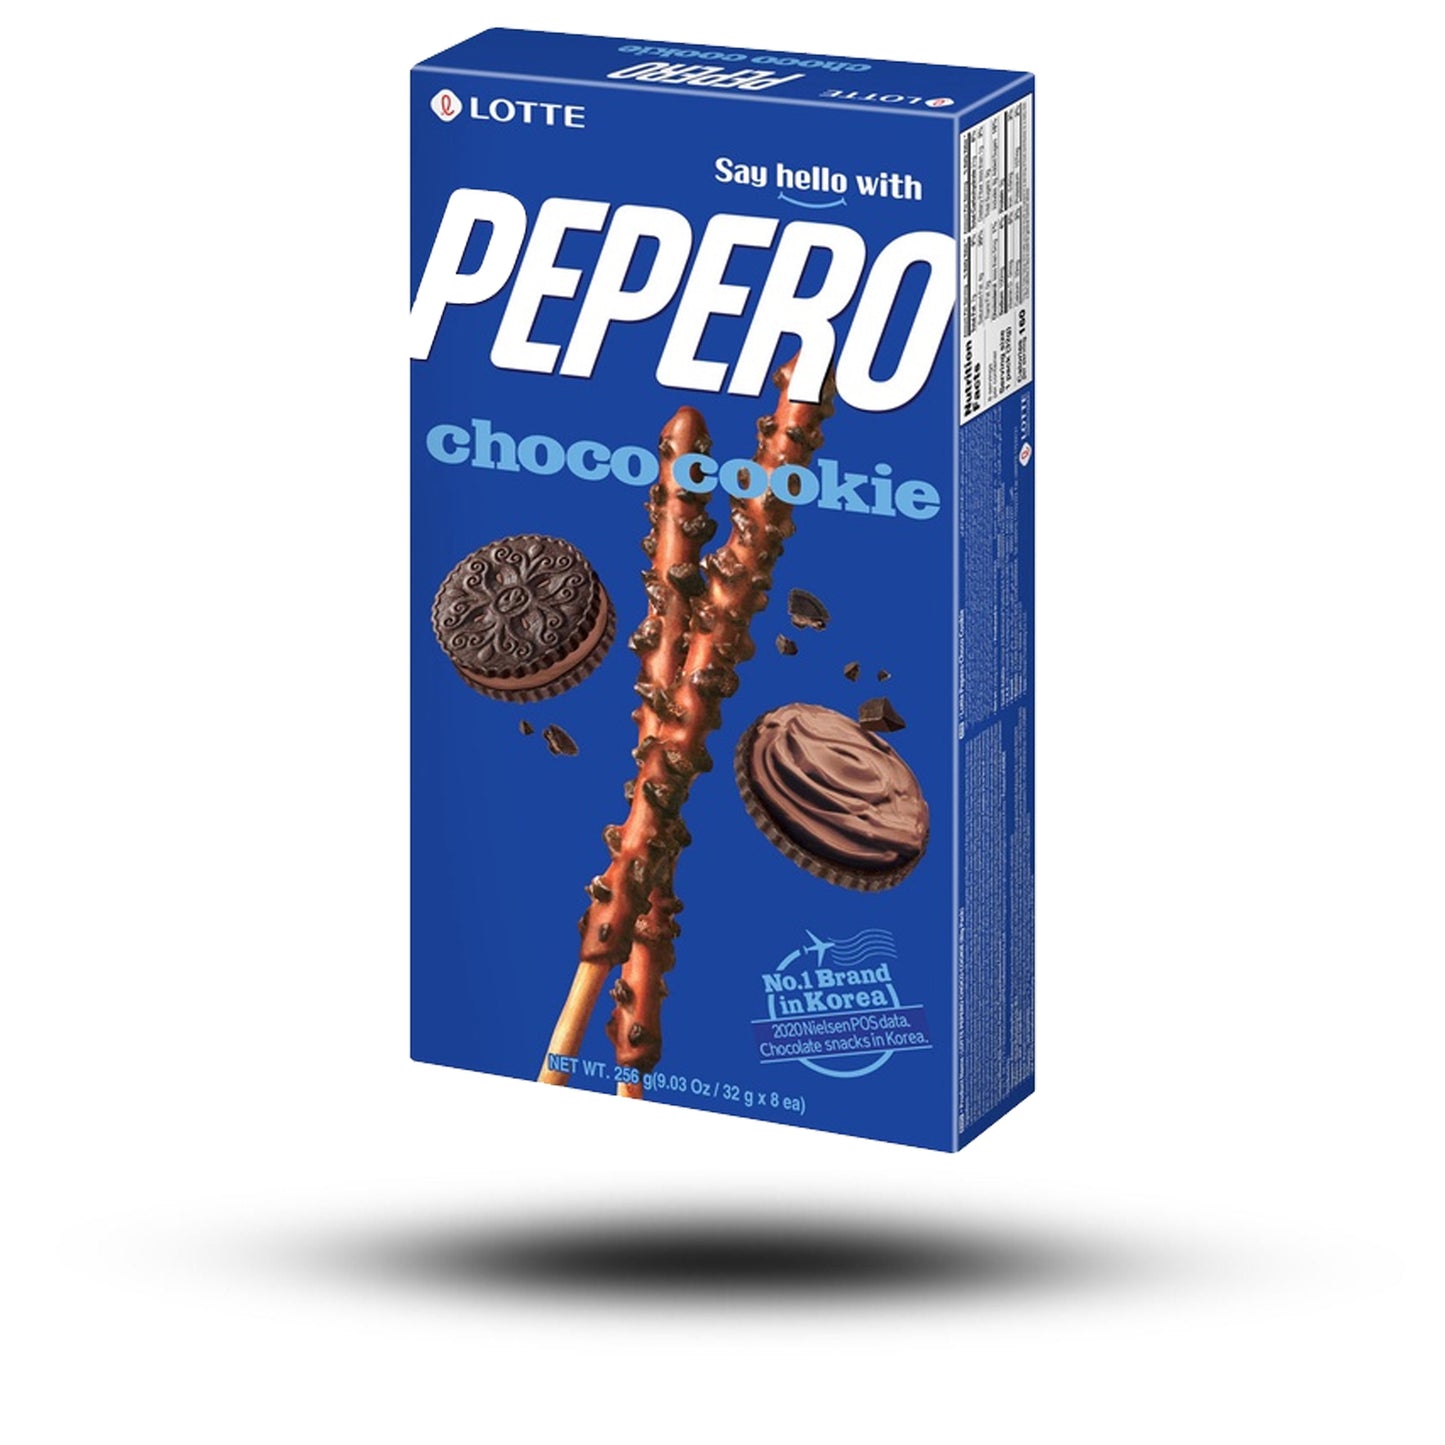 Pepero Choco Cookie 32g